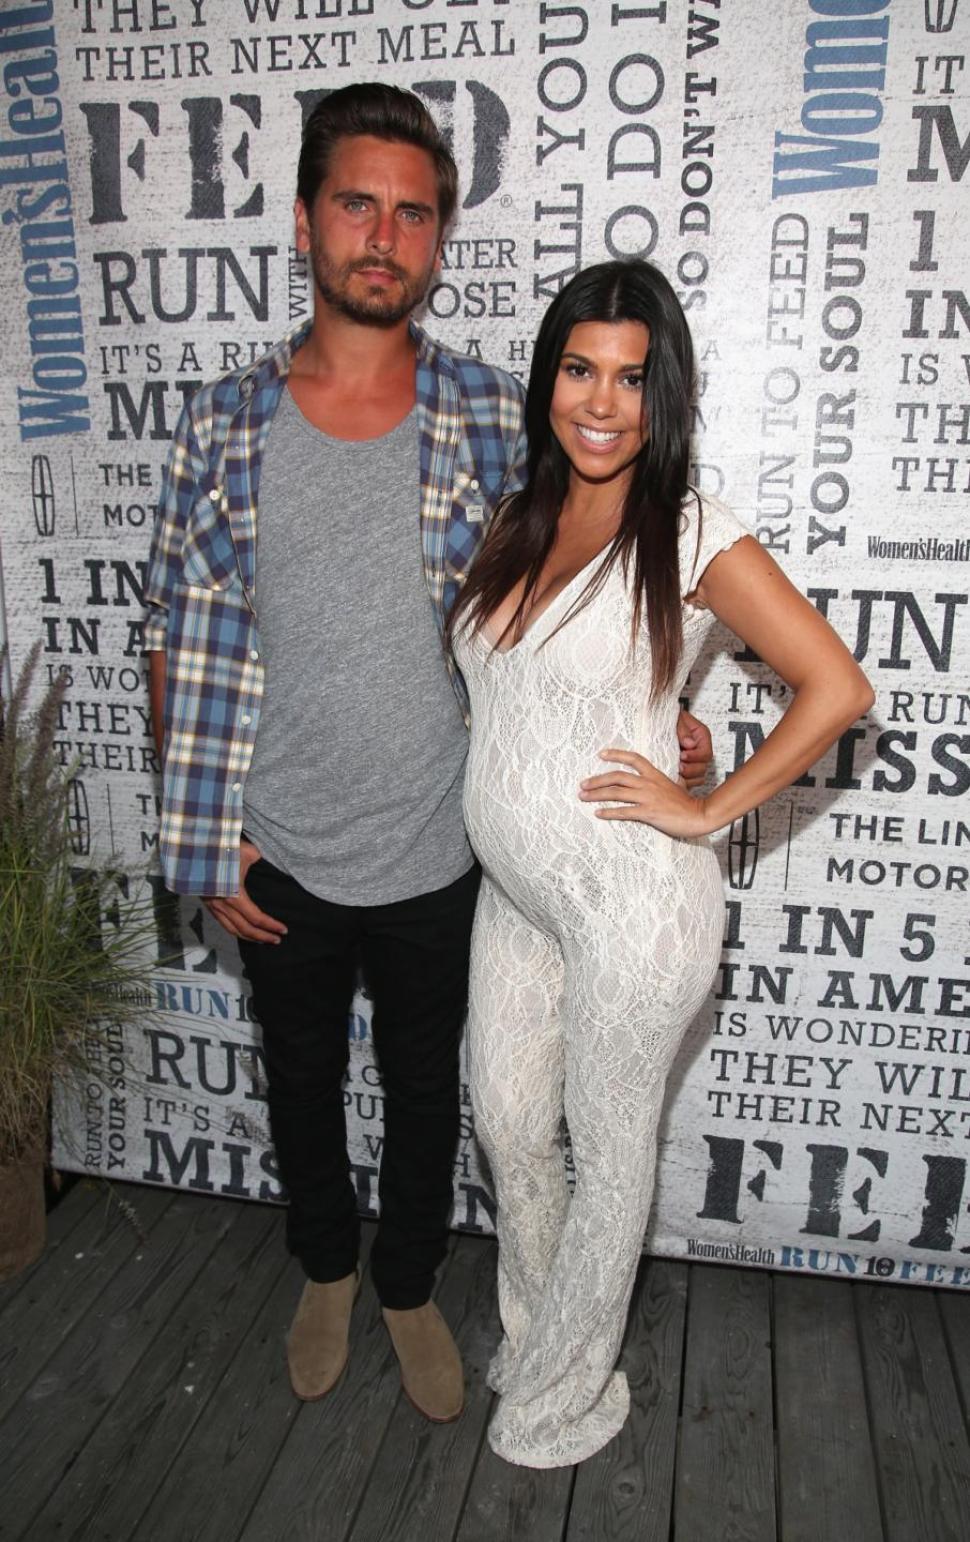 It's a boy for reality star couple Kourtney Kardashian and boyfriend Scott Disick.